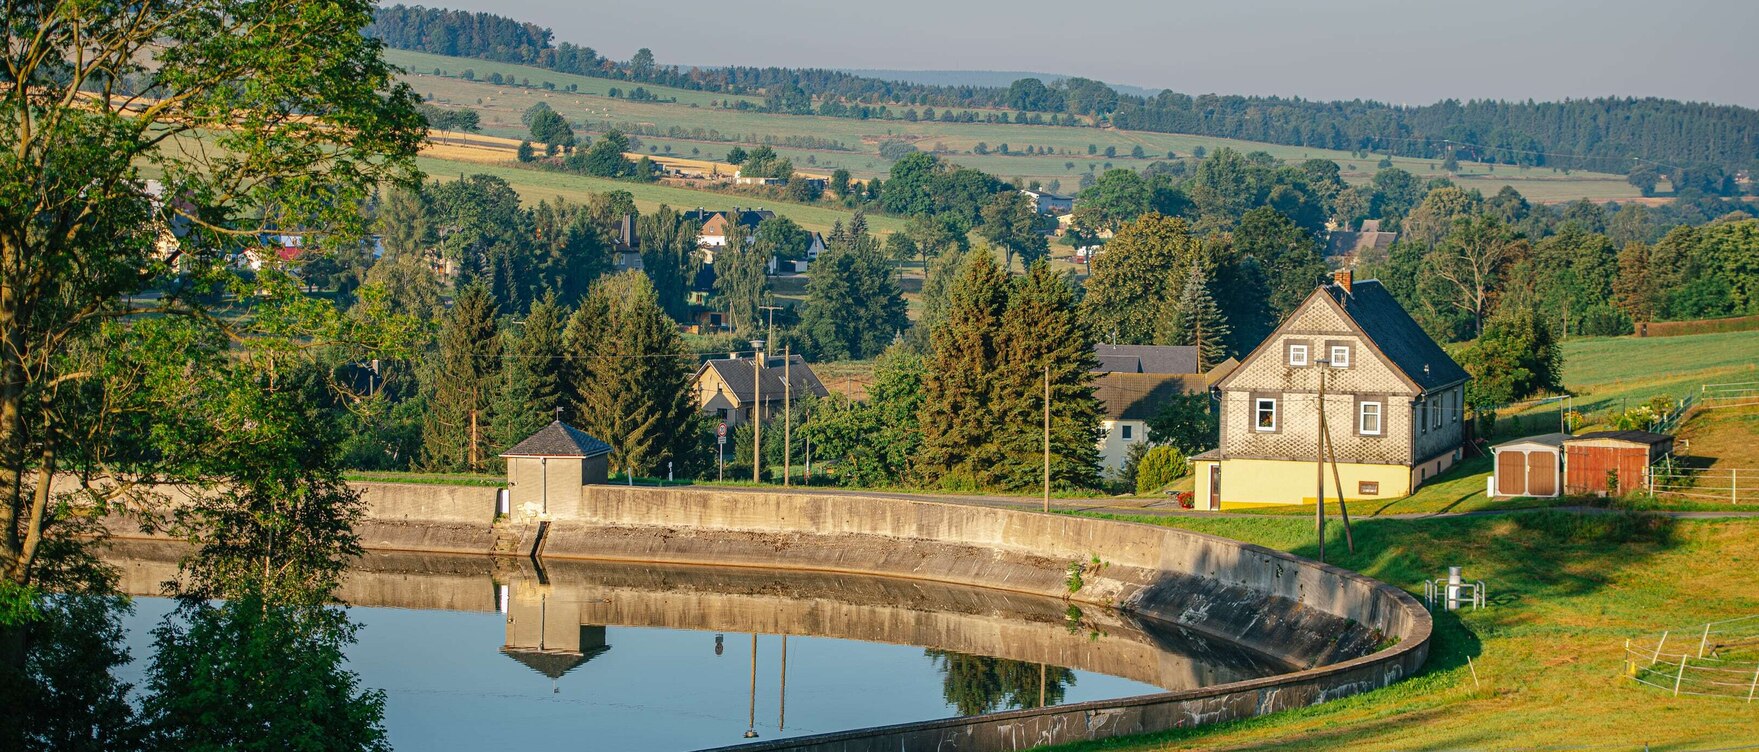 Blick auf einen Teich, der von einer Mauer umgeben ist, dahinter Häuser, Bäume und Felder